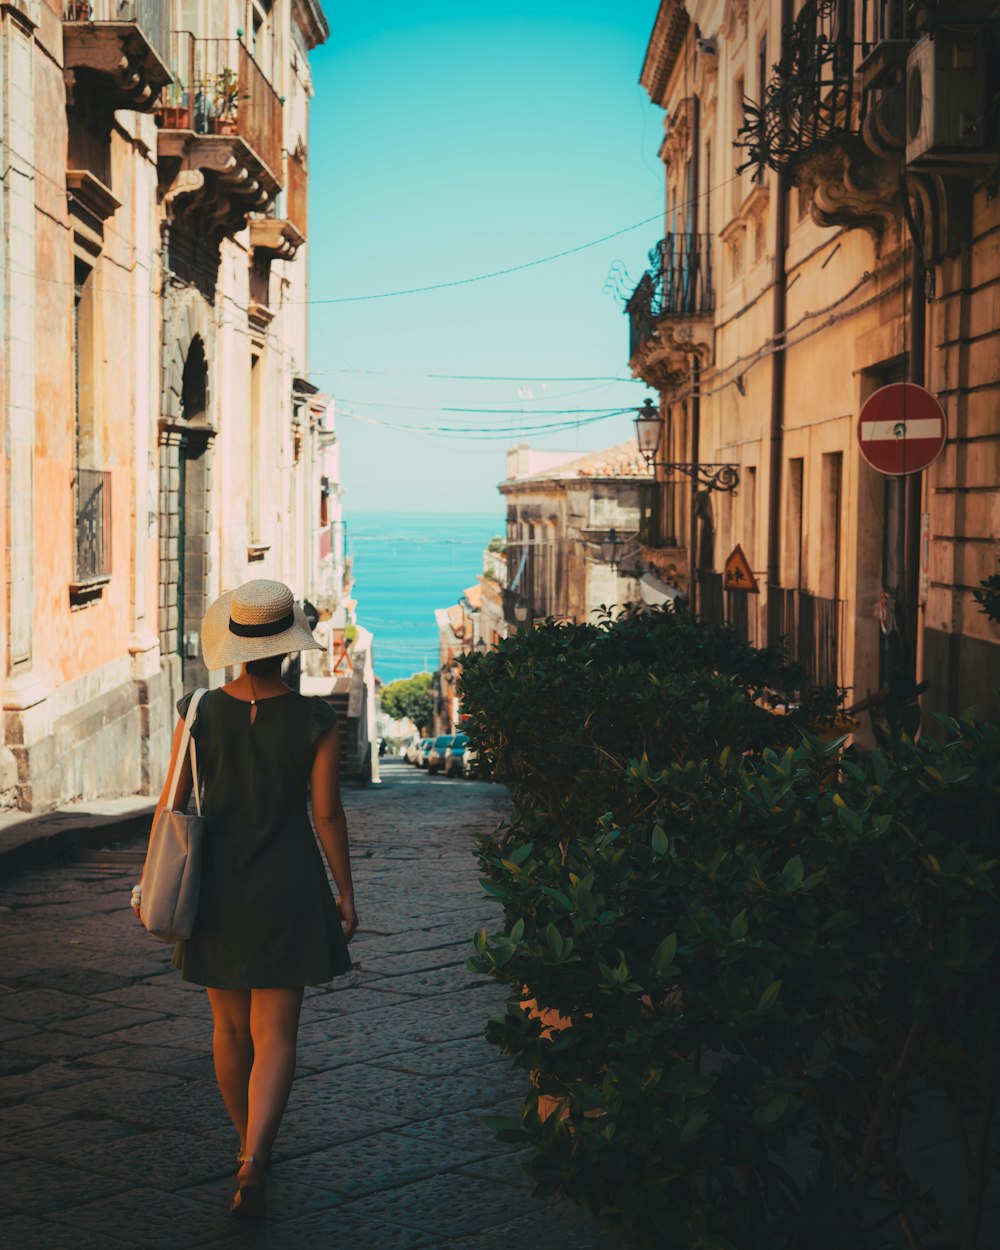 Une femme coiffée d’un chapeau marchant dans une rue